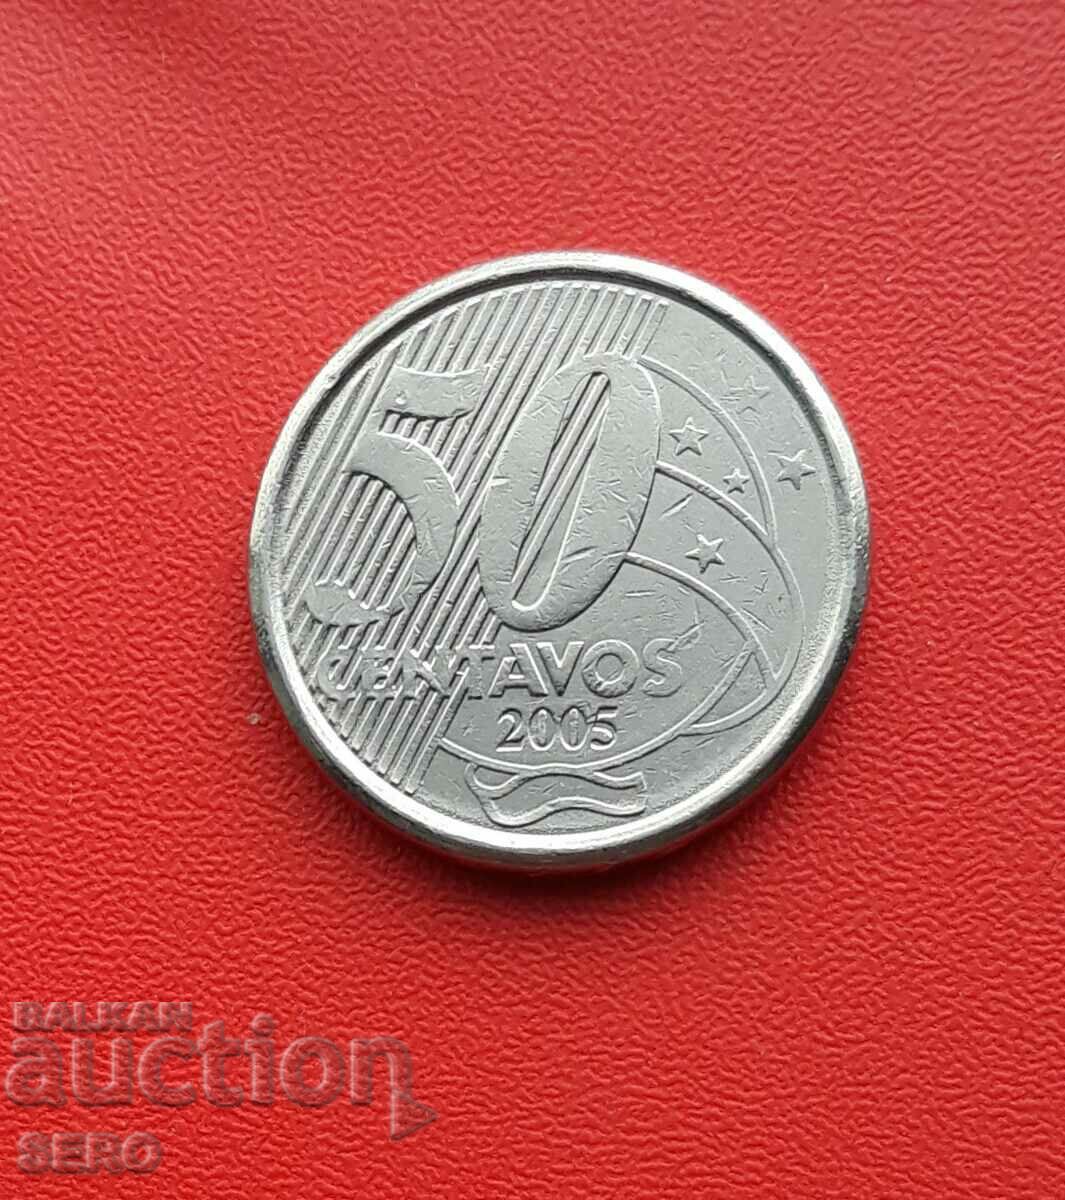 Бразилия-50 центавос 2005